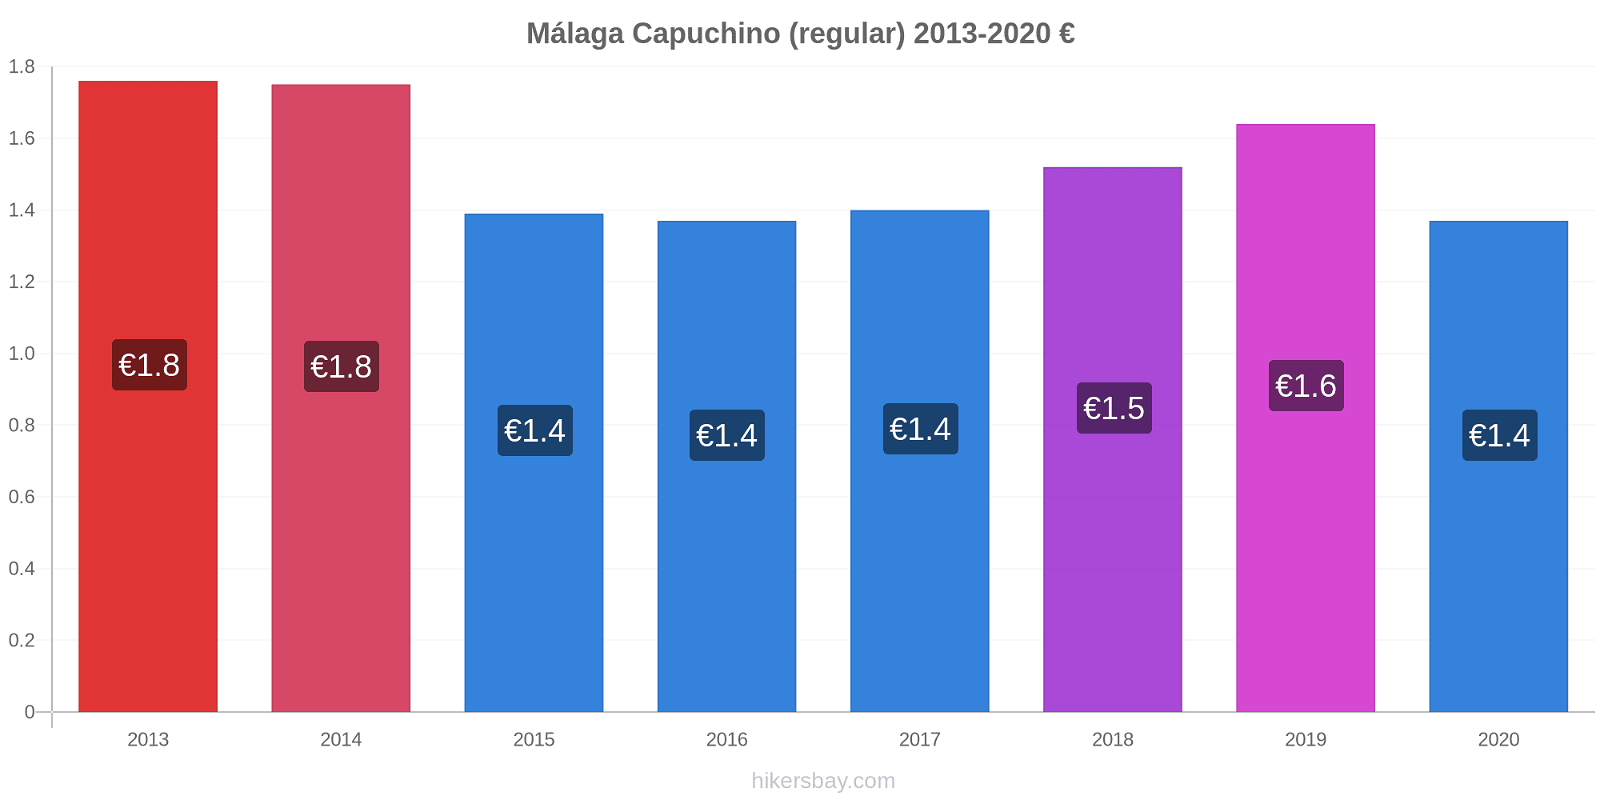 Málaga cambios de precios Capuchino (regular) hikersbay.com